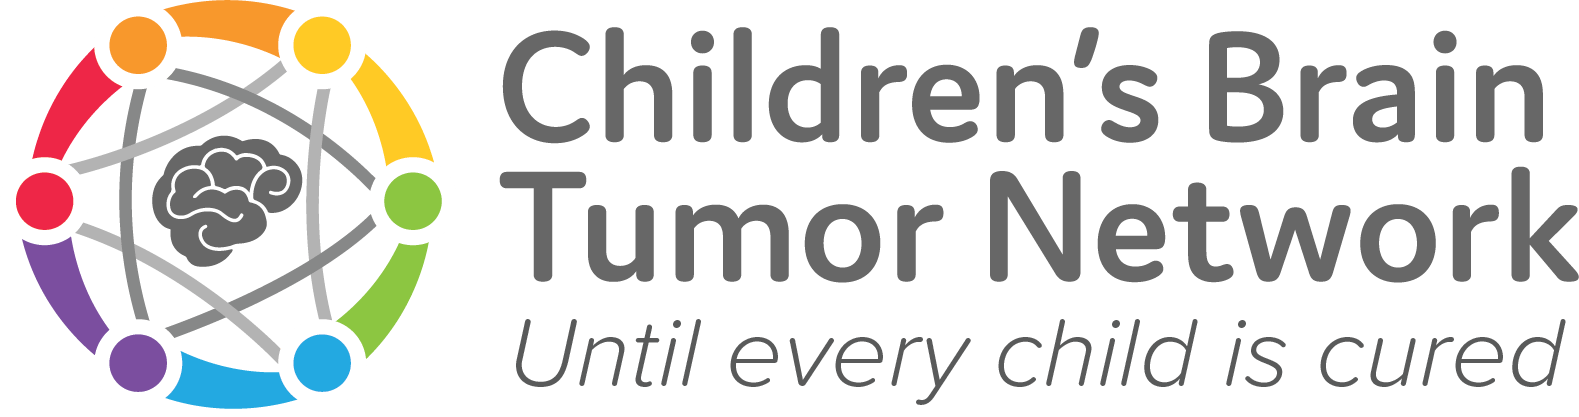 Children’s Brain Tumor Network